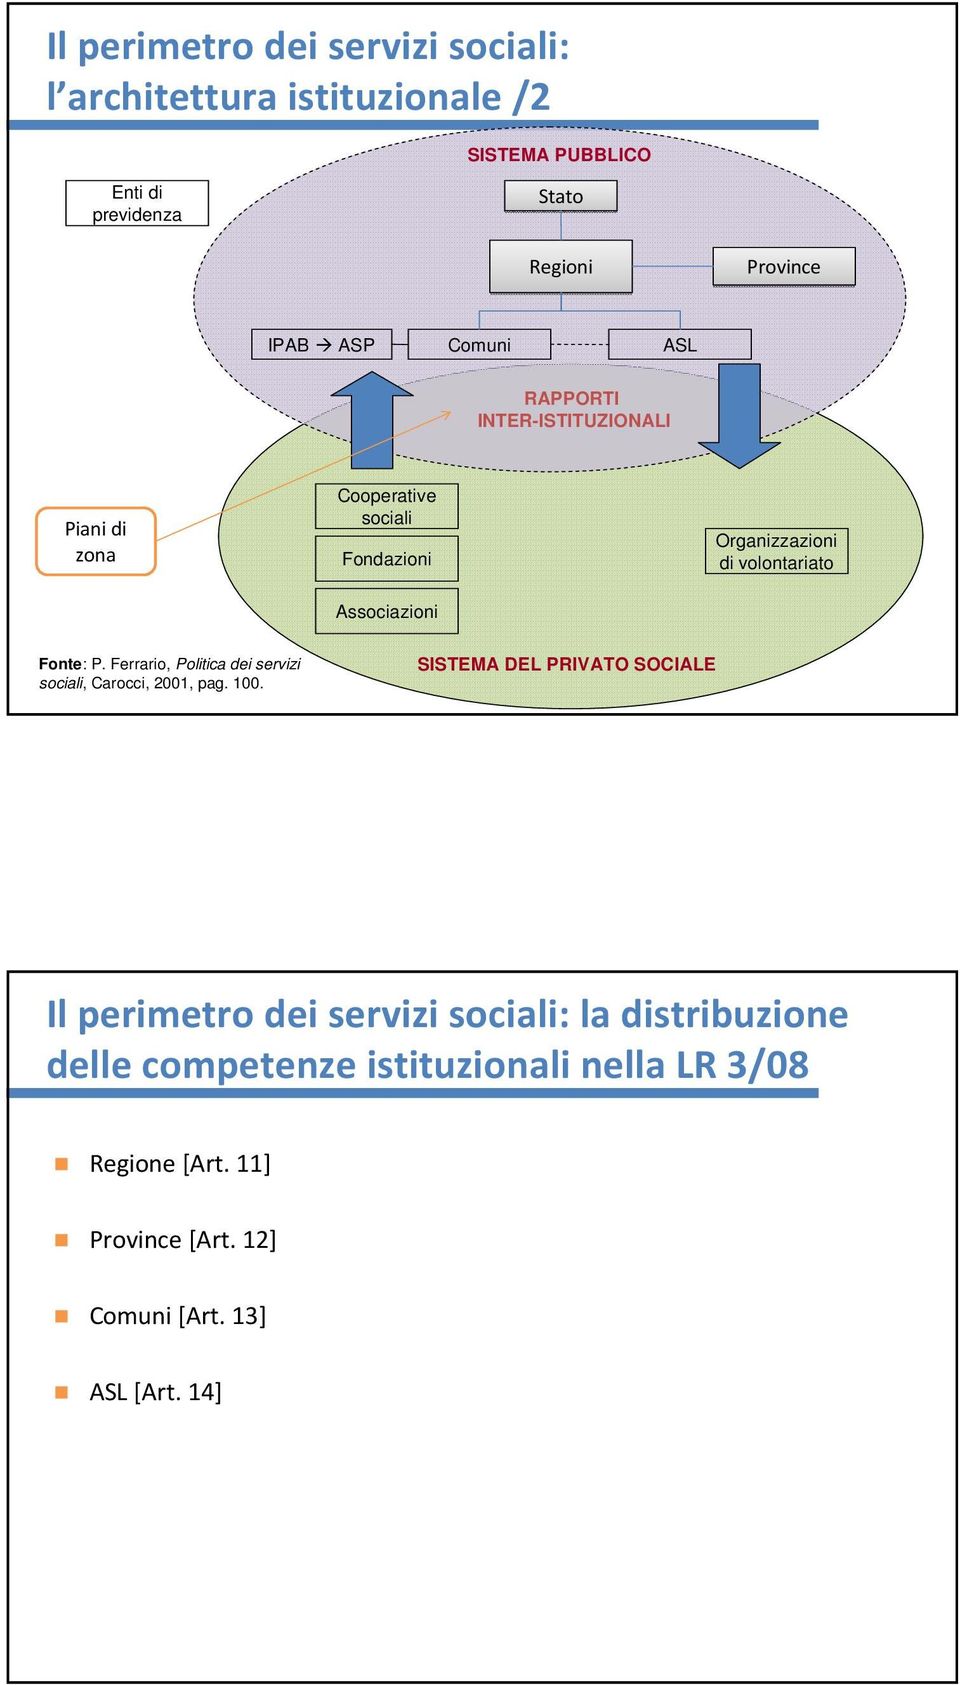 Fonte: P. Ferrario, Politica dei servizi sociali, Carocci, 2001, pag. 100.